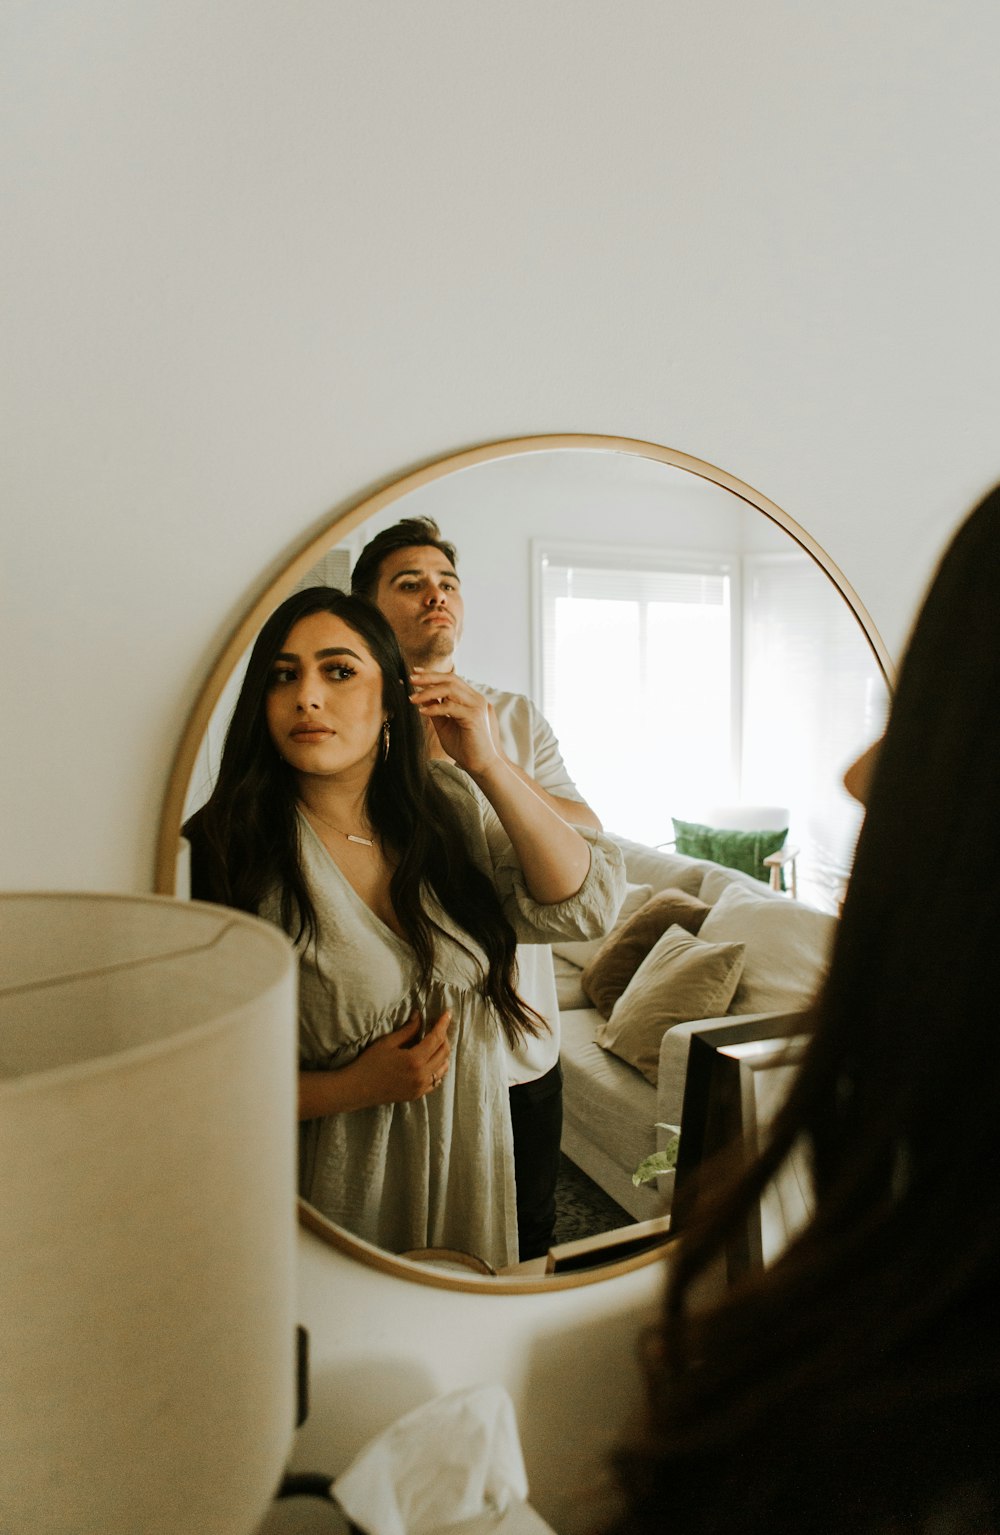 Ein Mann und eine Frau, die ein Selfie im Spiegel machen